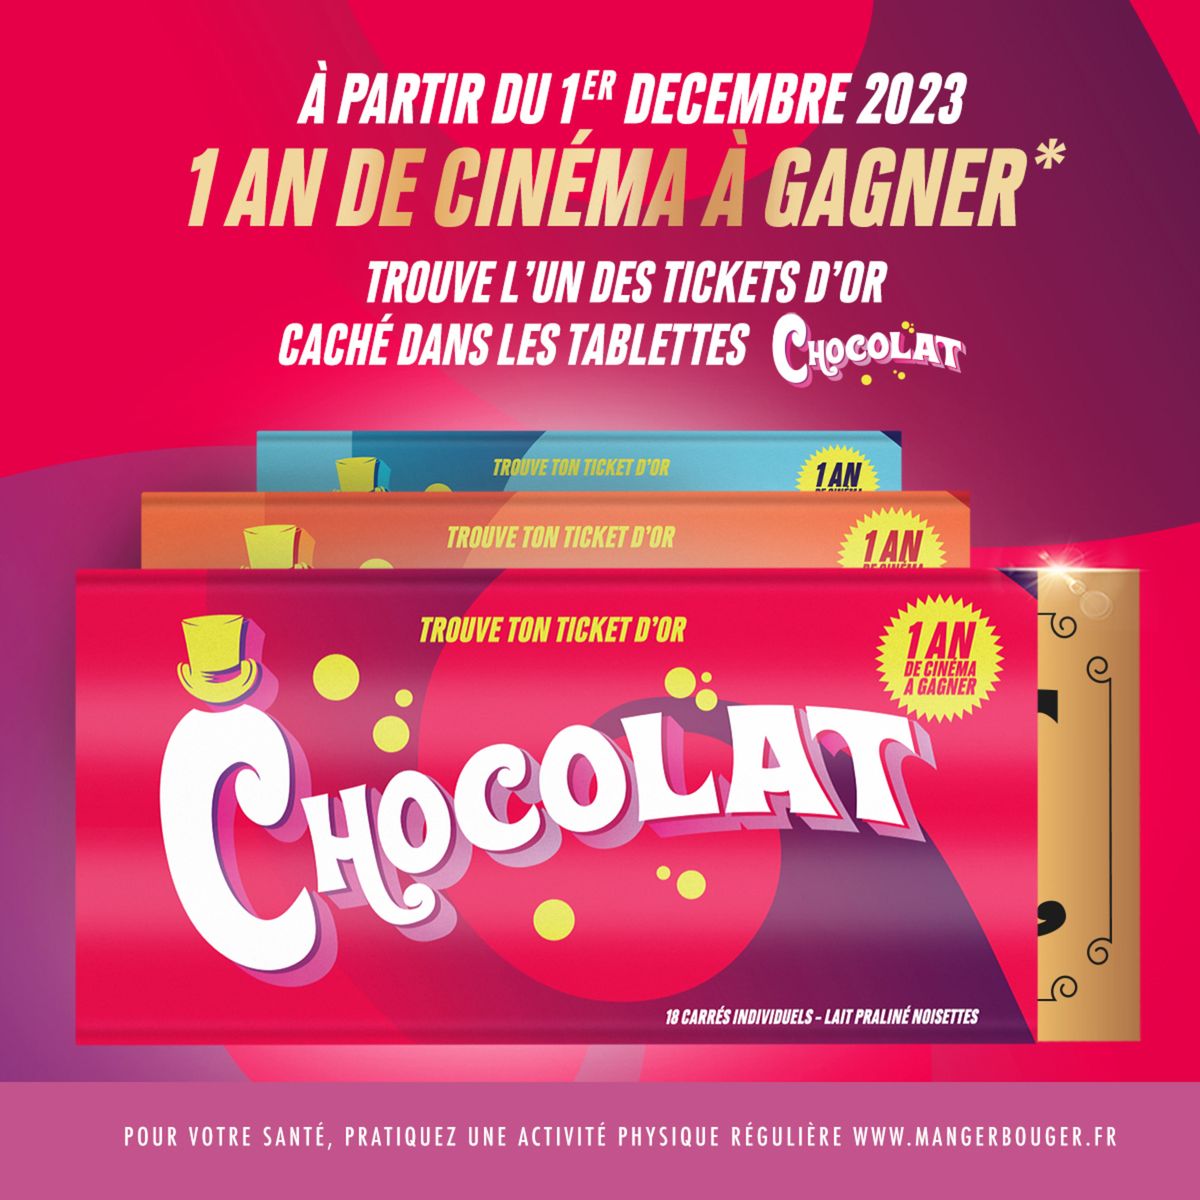 Catalogue Offres Cinémas Gaumont Pathé, page 00001